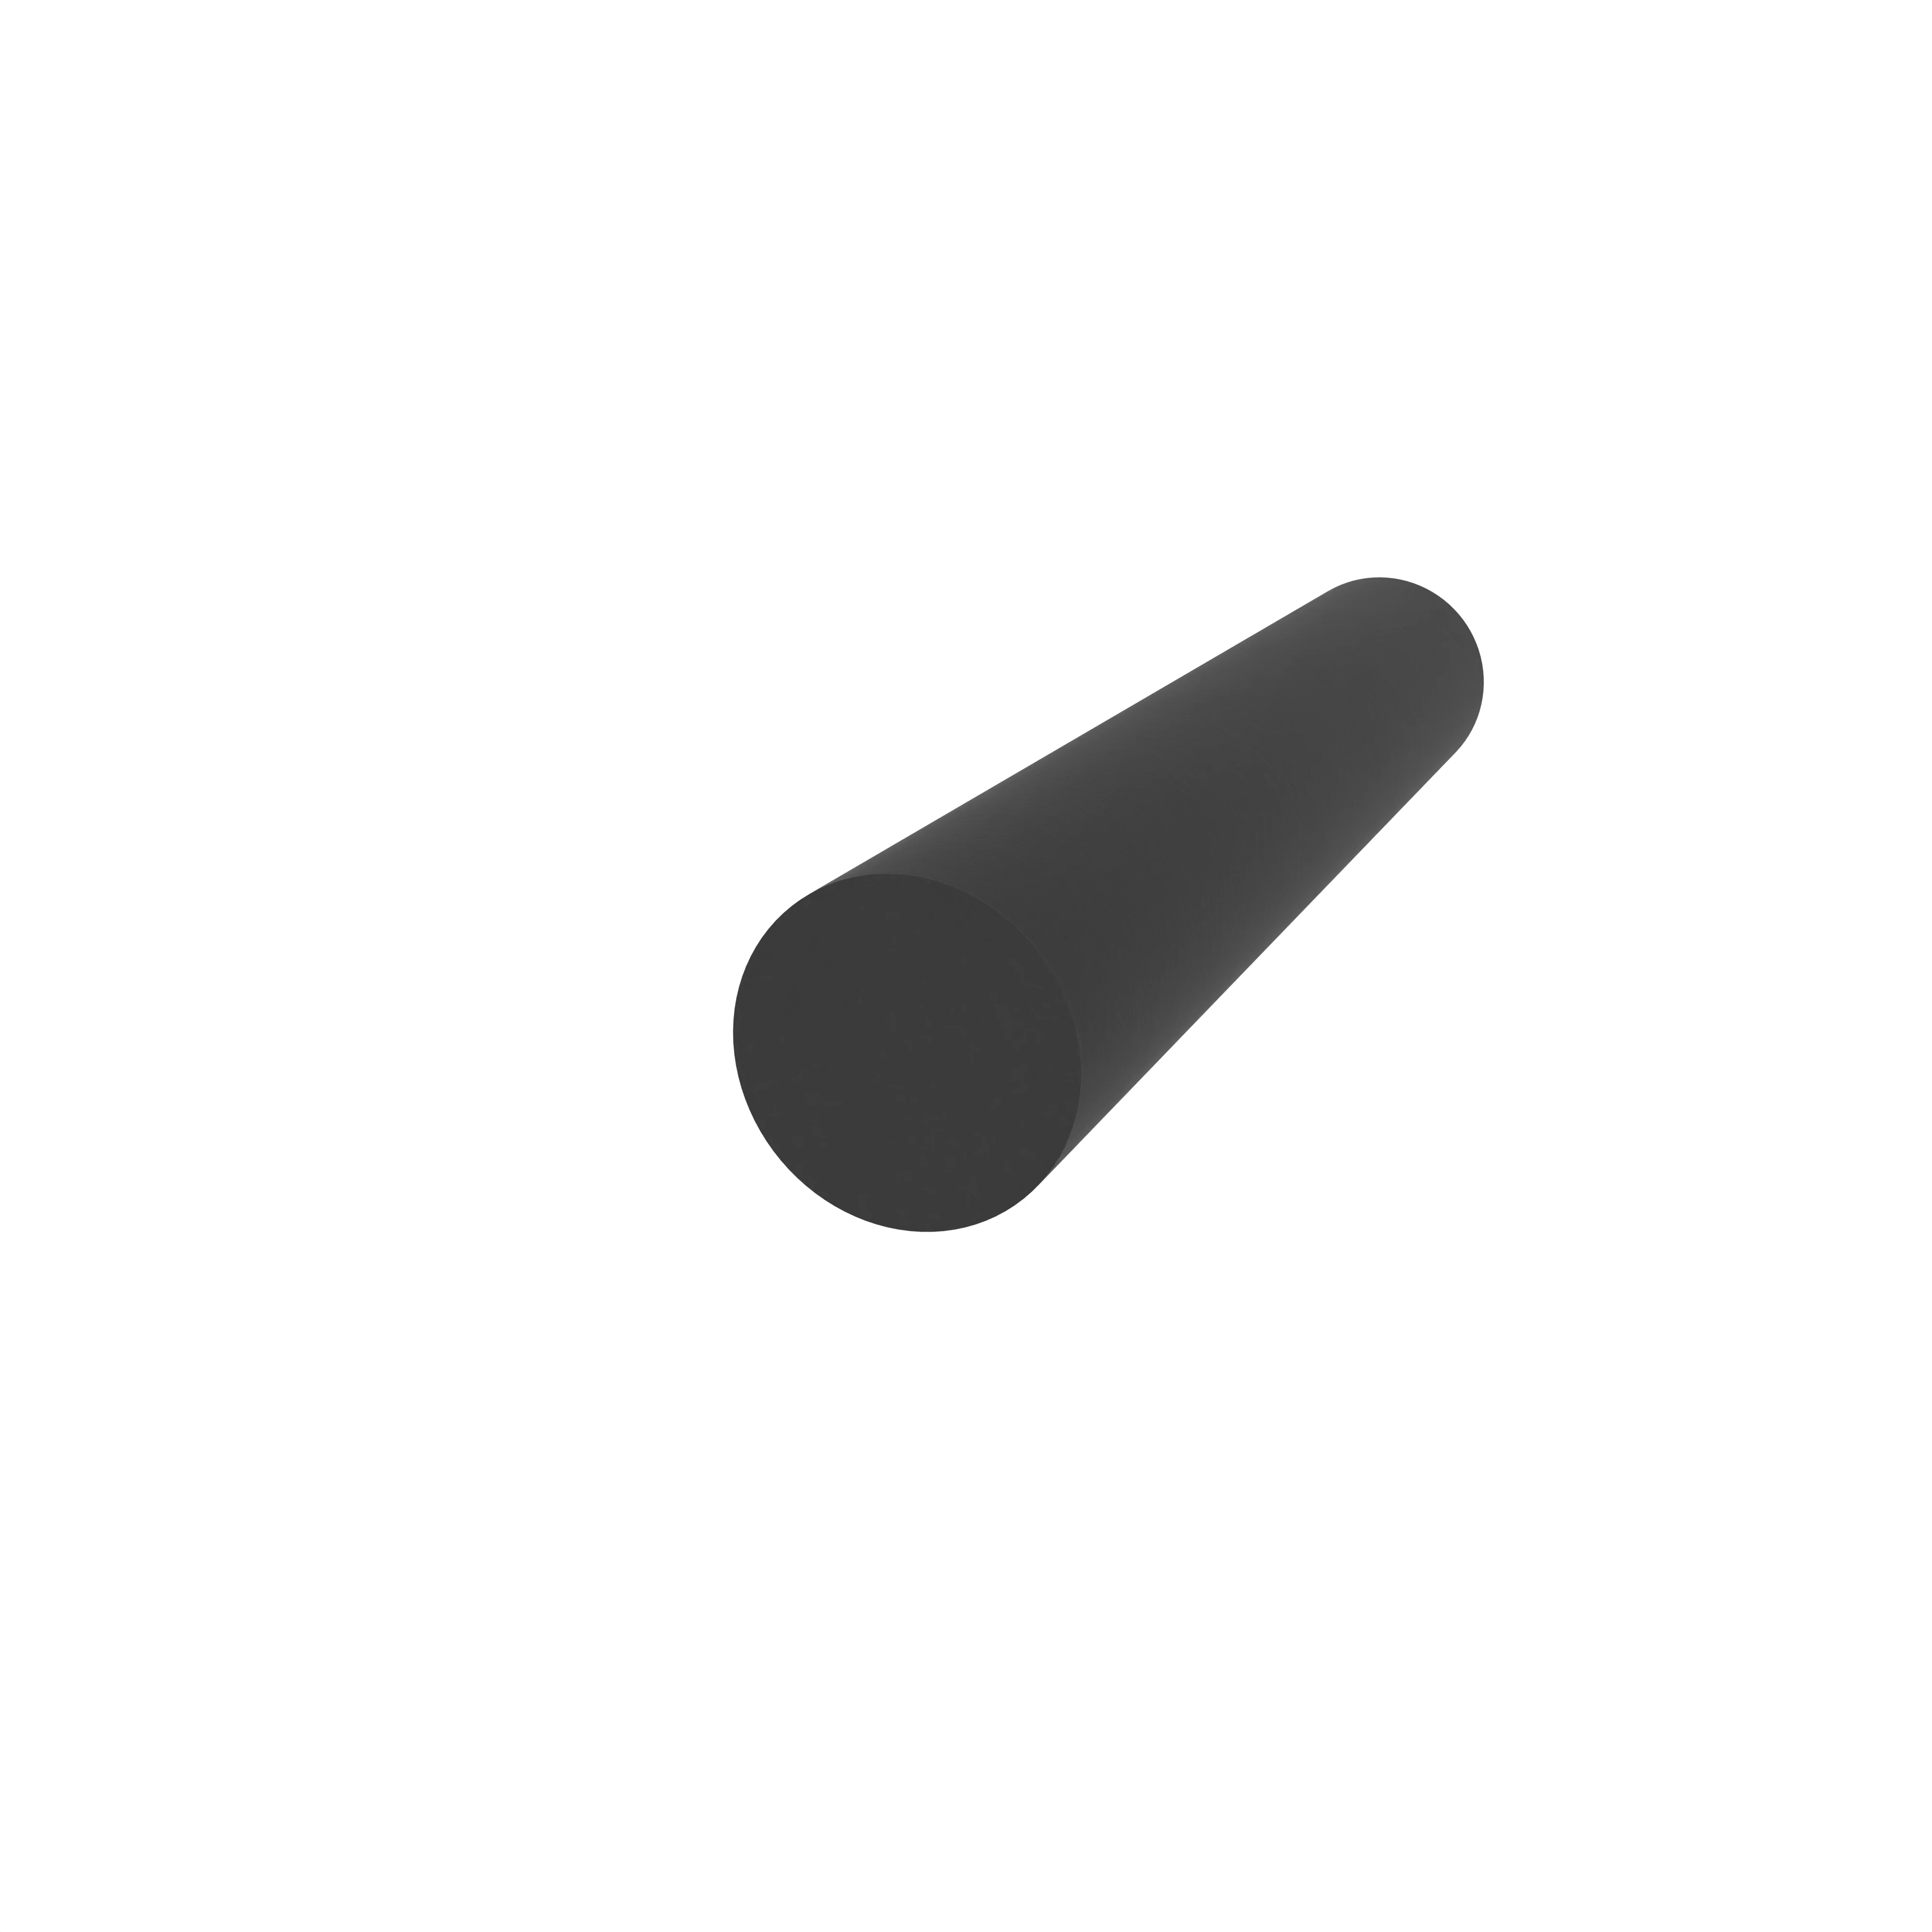 Moosgummidichtung rund | 4 mm Durchmesser | Farbe: schwarz